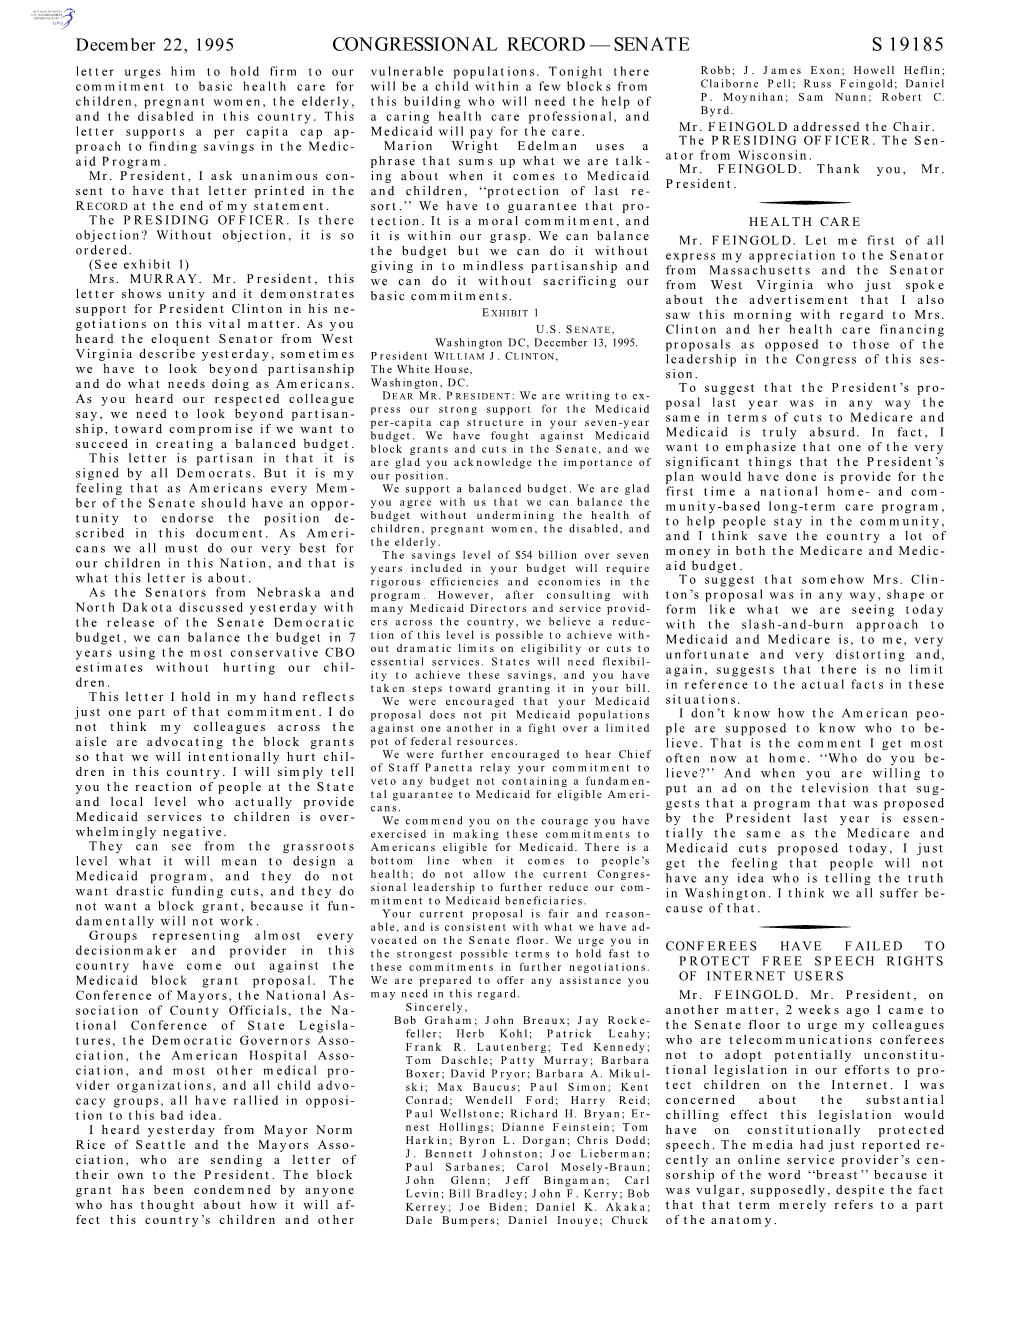 Congressional Record—Senate S 19185